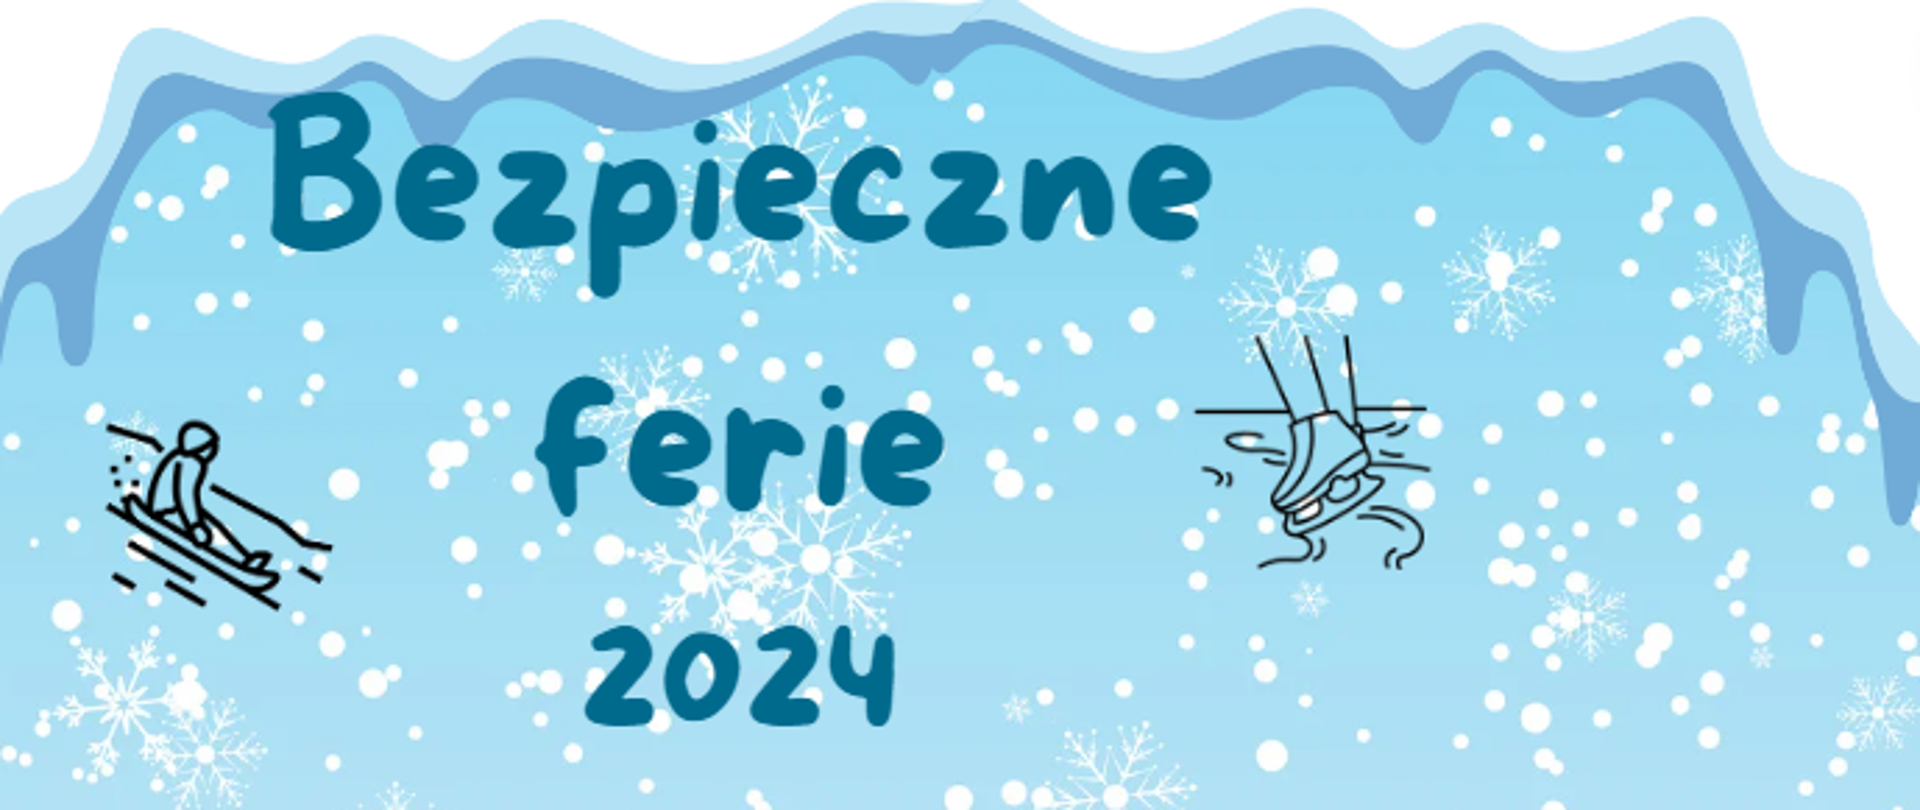 Napis na niebieskim tle ze śnieżkami: Bezpieczne ferie 2024. Z lewej strony grafika postaci zjeżdżającej na sankach z prawej łyżew. 